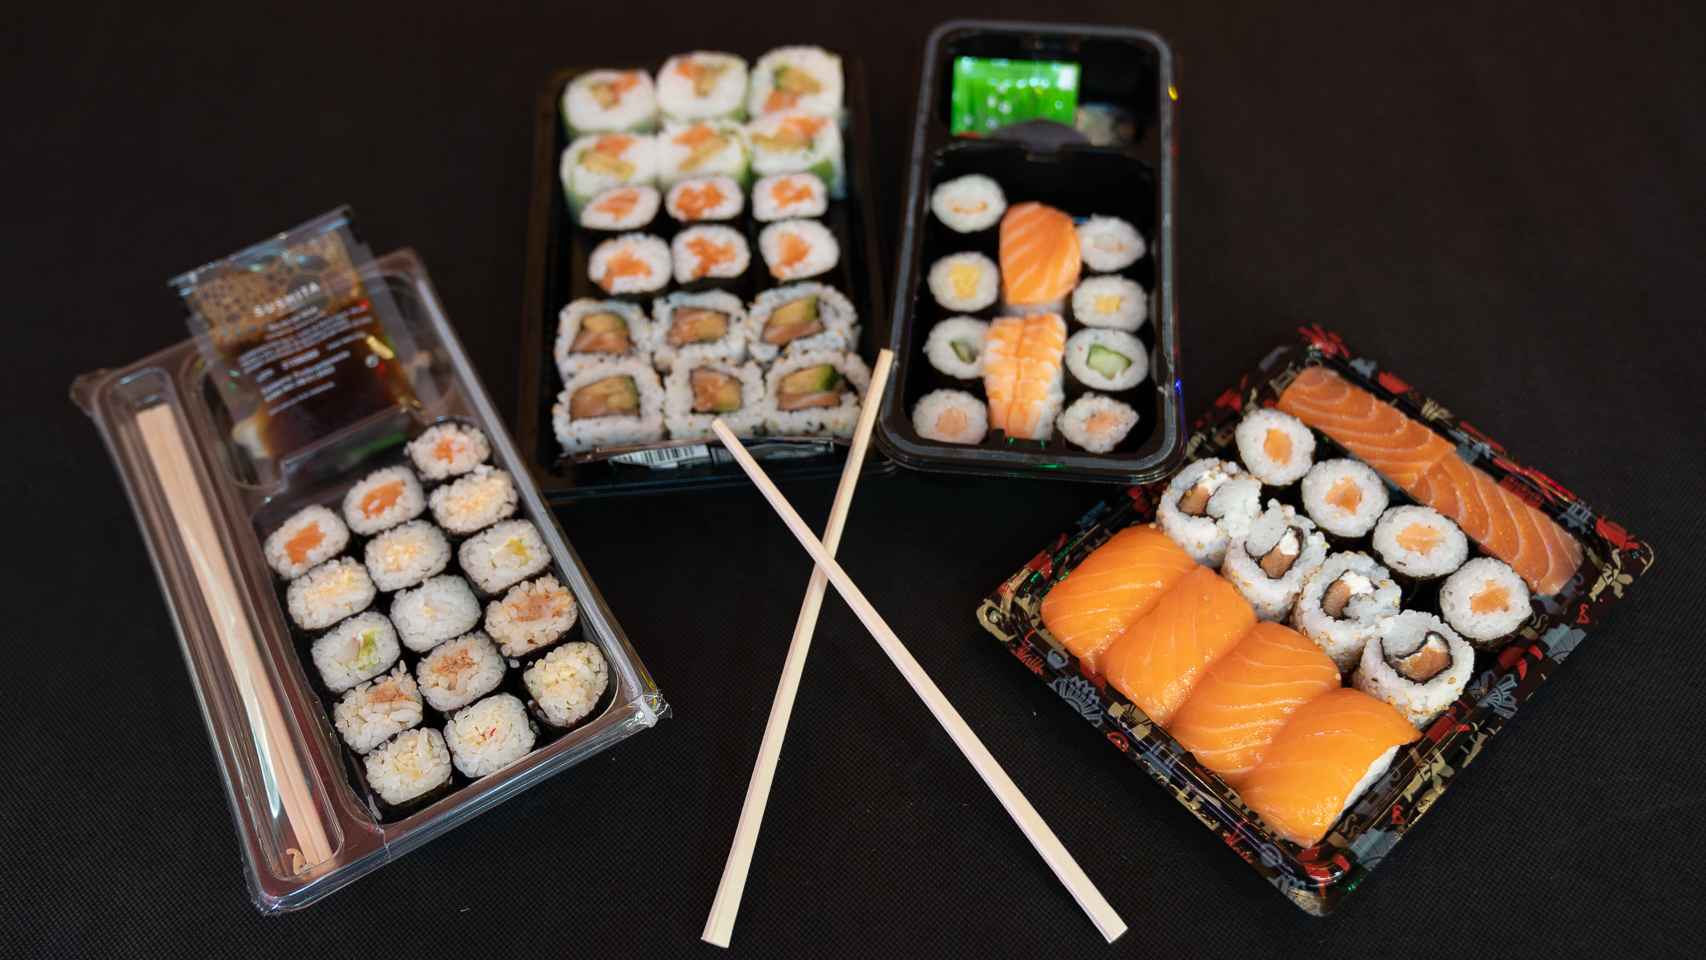 Las cuatro bandejas de sushi de los supermercados analizadas en la cata.